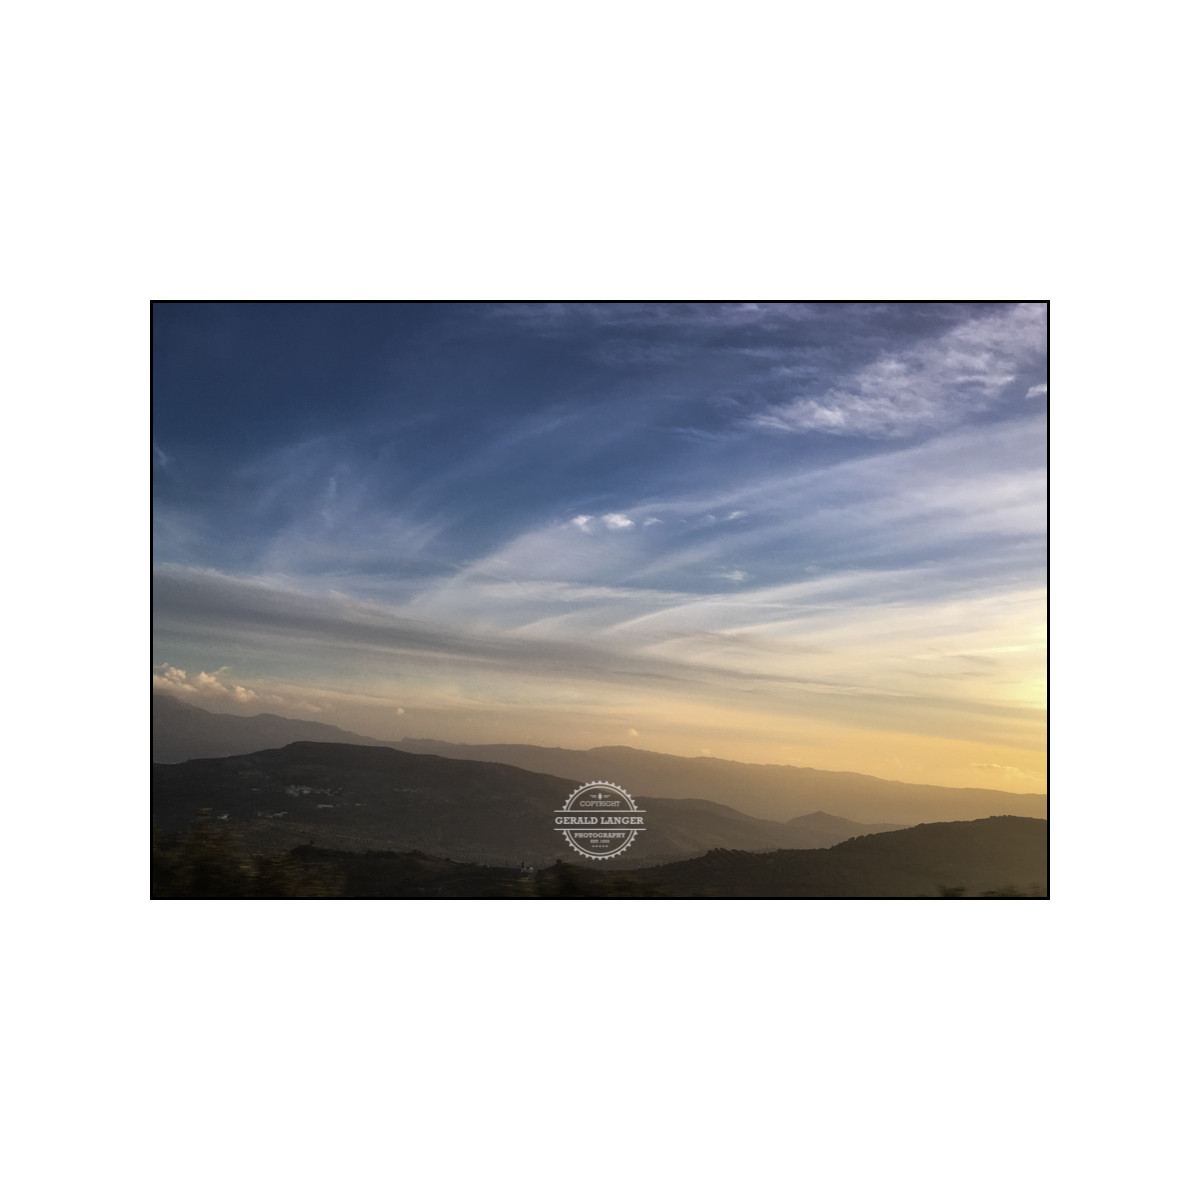 20181119 Kreta by iPhone SE © Gerald Langer 190 - Gerald Langer